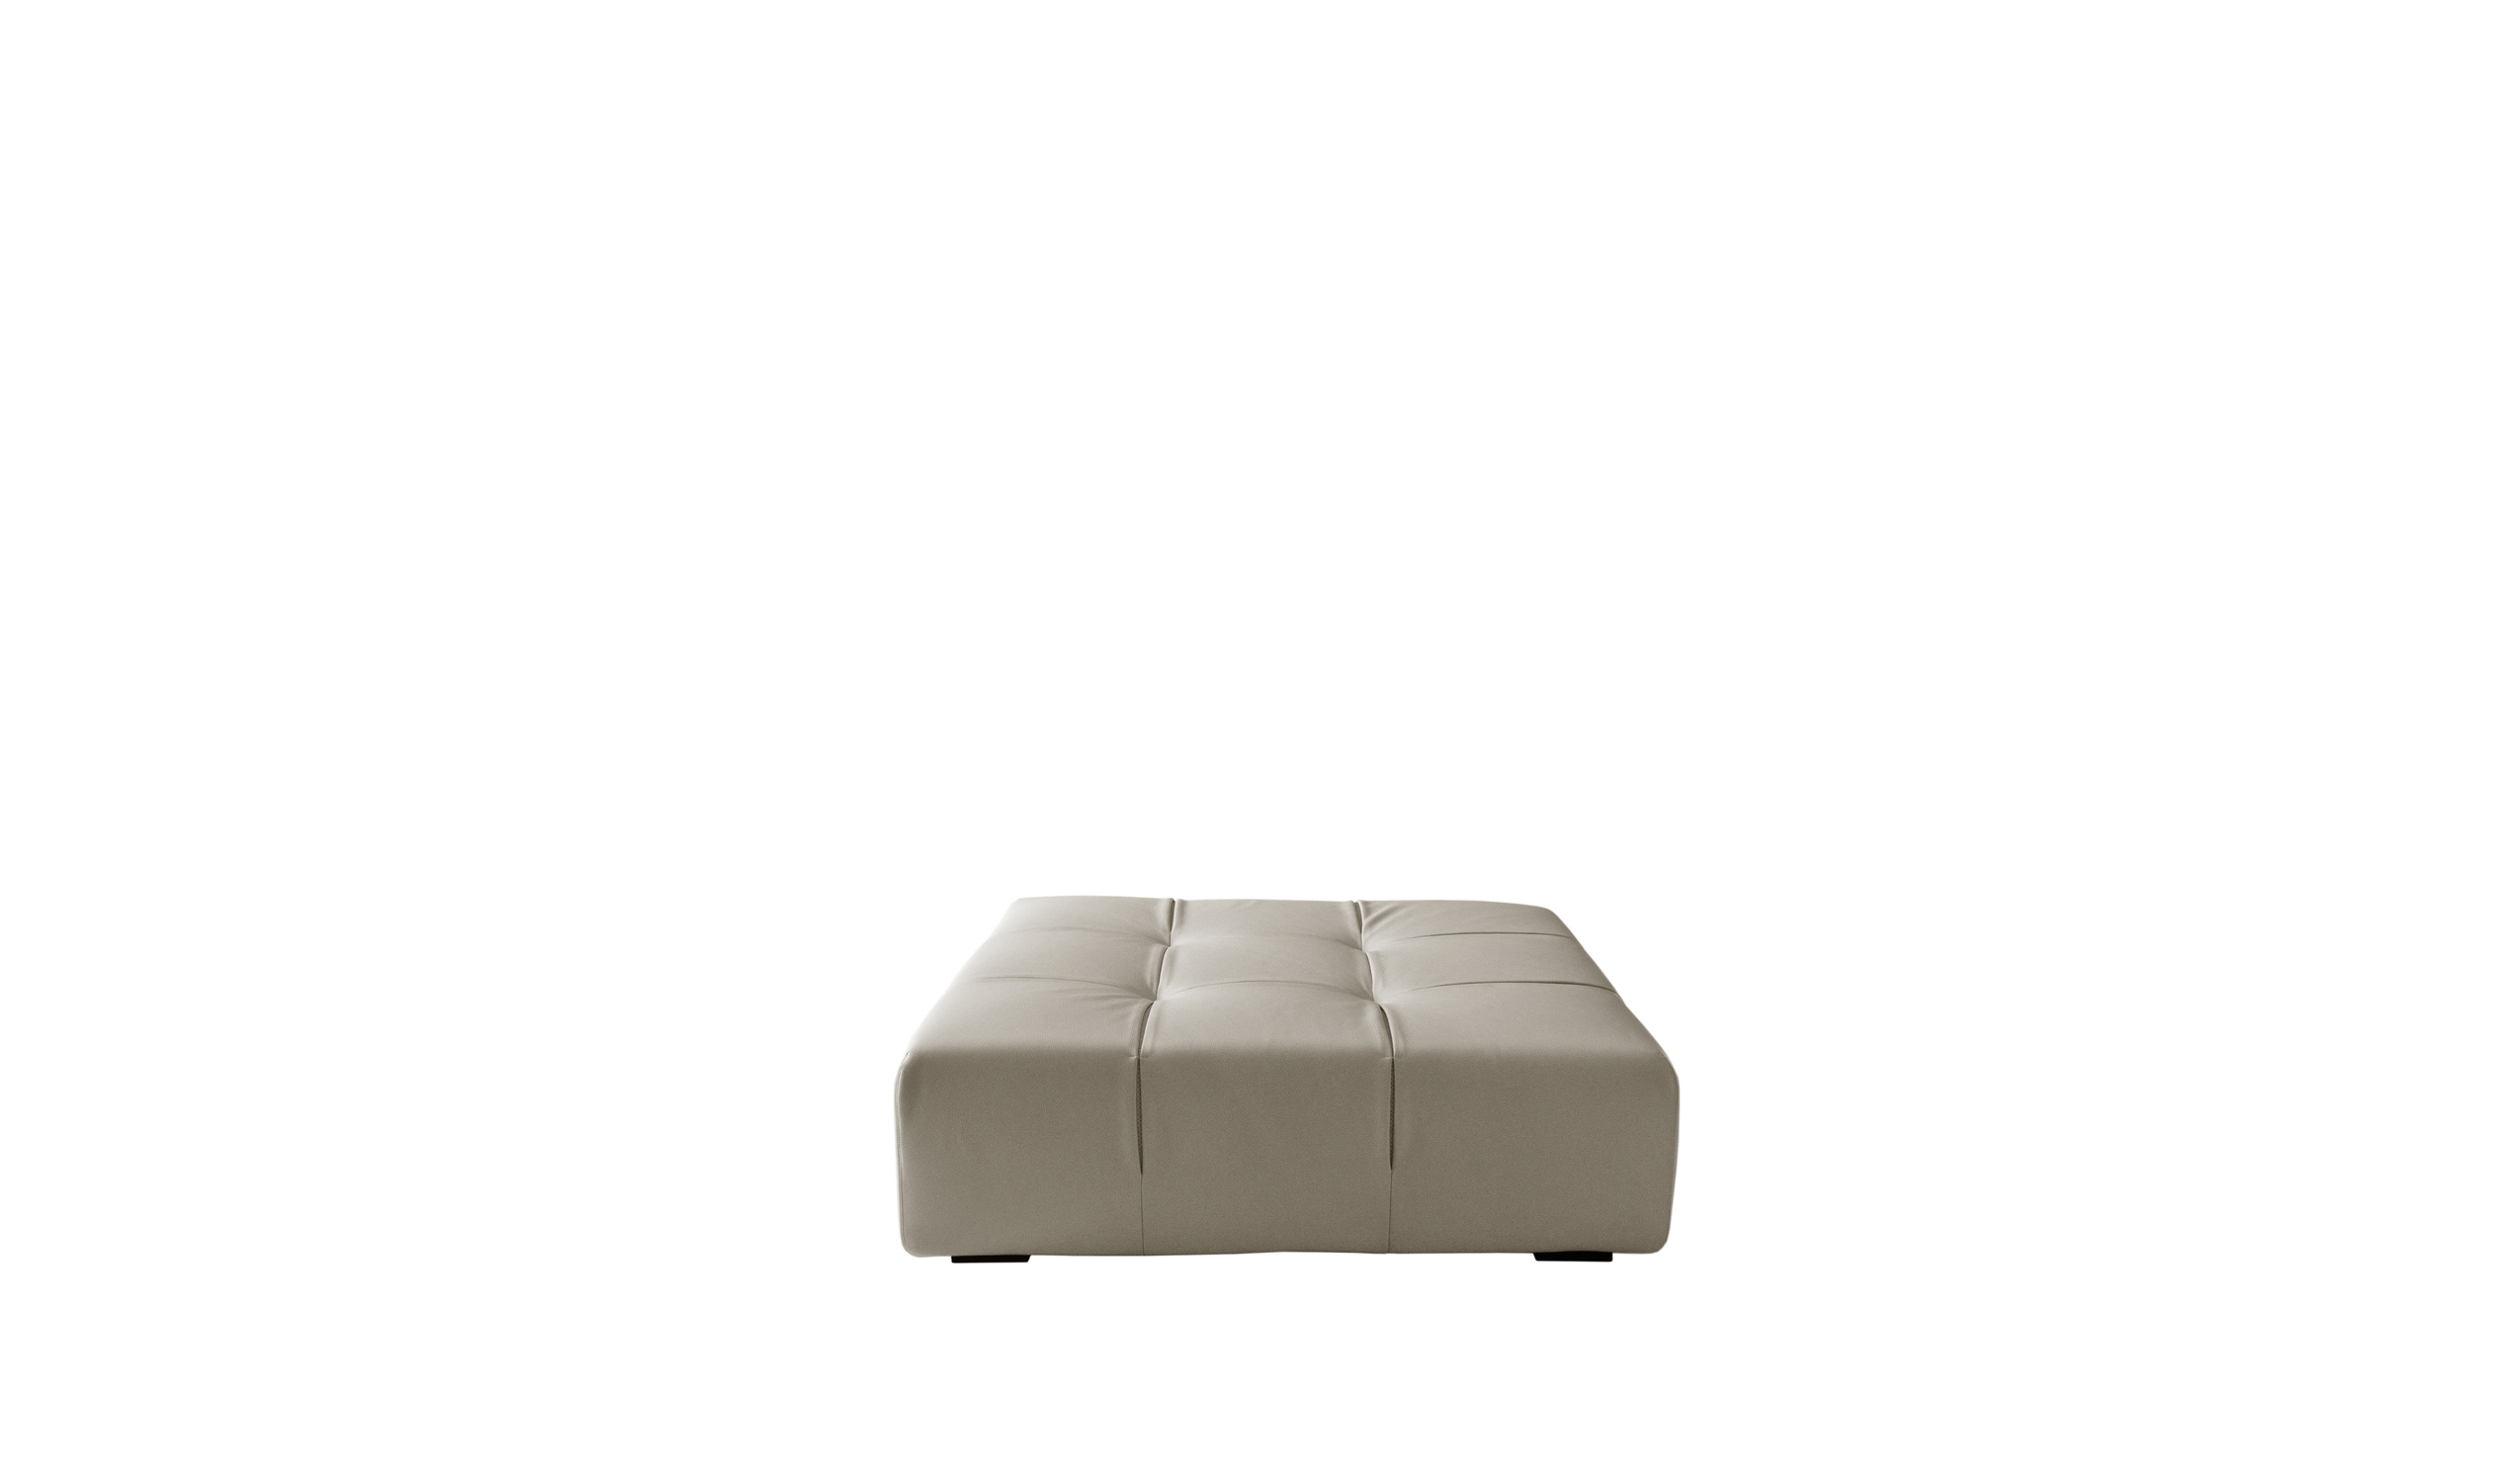 Modern designer italian sofas - Tufty-Time Sofas 11